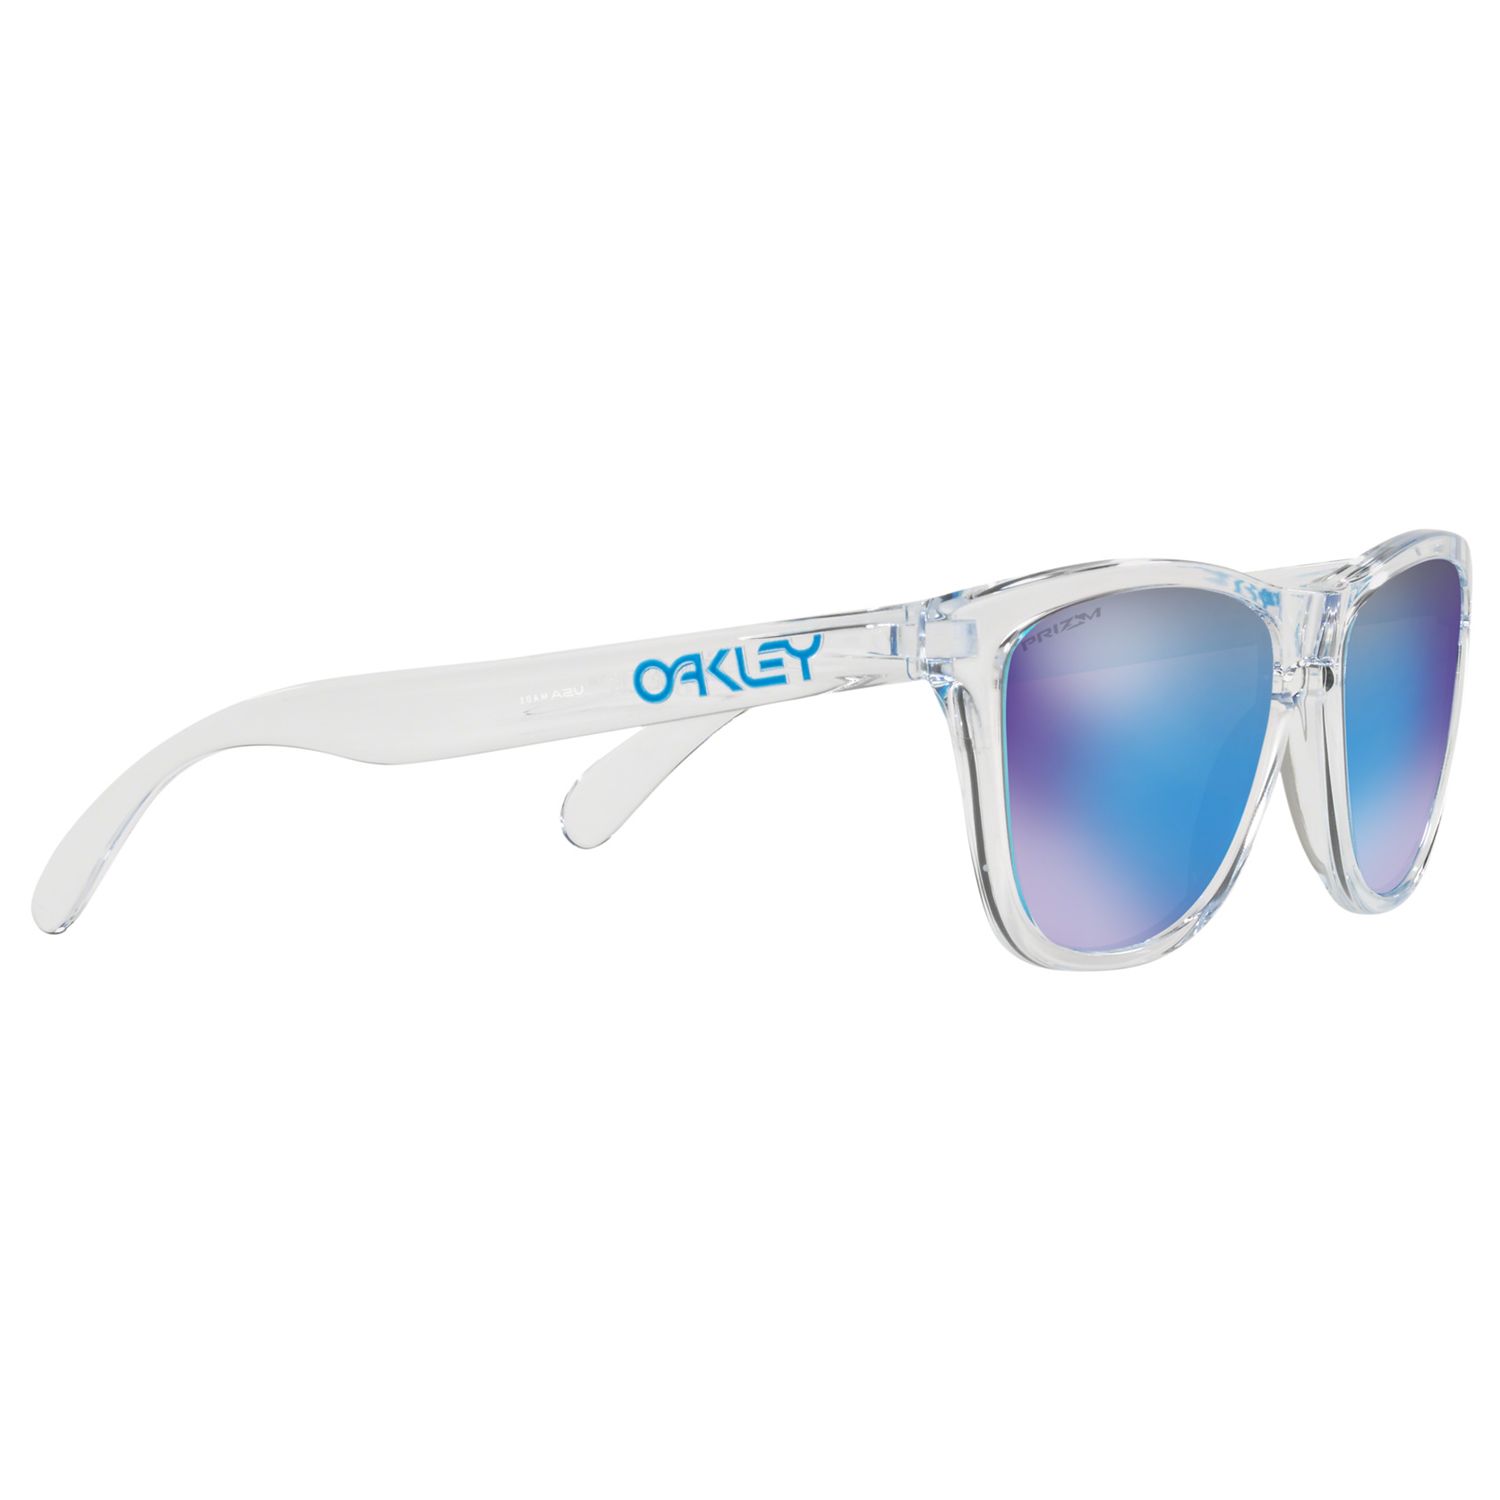 oakley oo9013 frogskins sunglasses